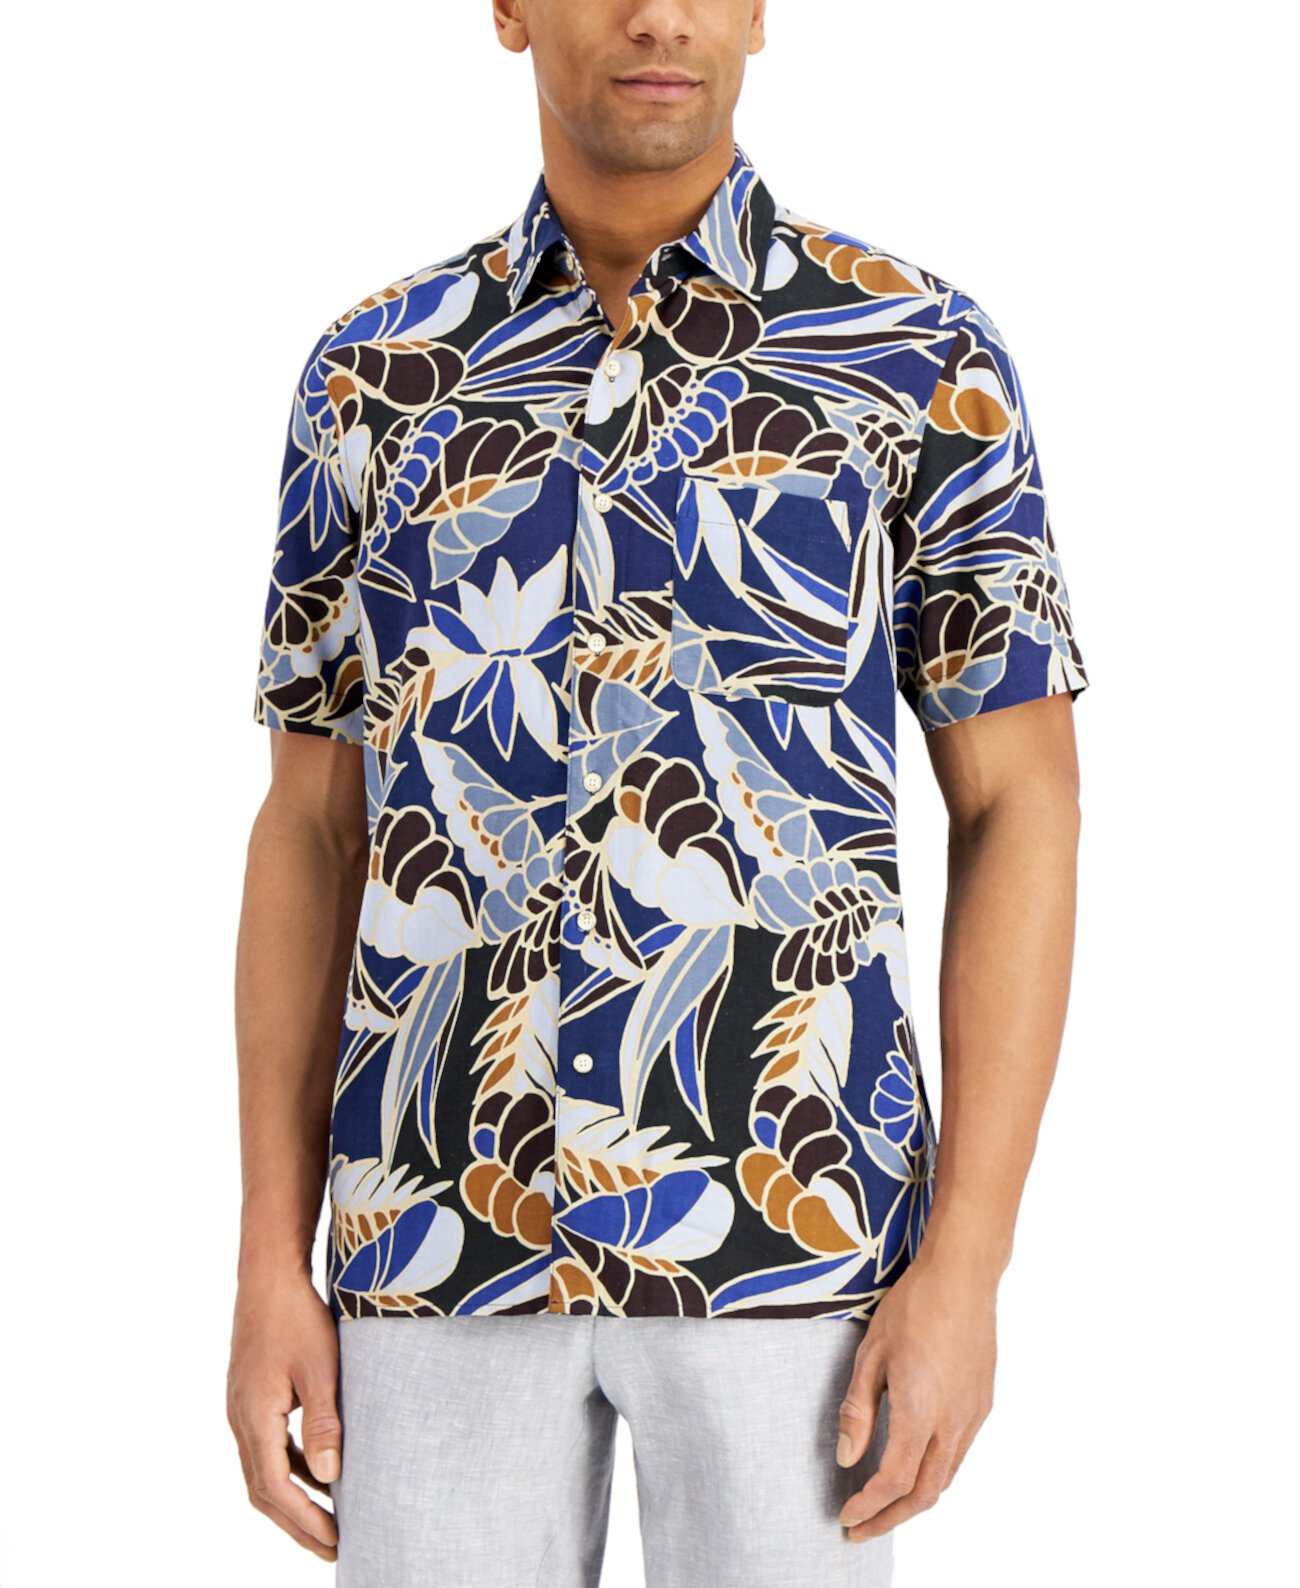 Мужская рубашка с принтом листьев, созданная для Macy's Tasso Elba